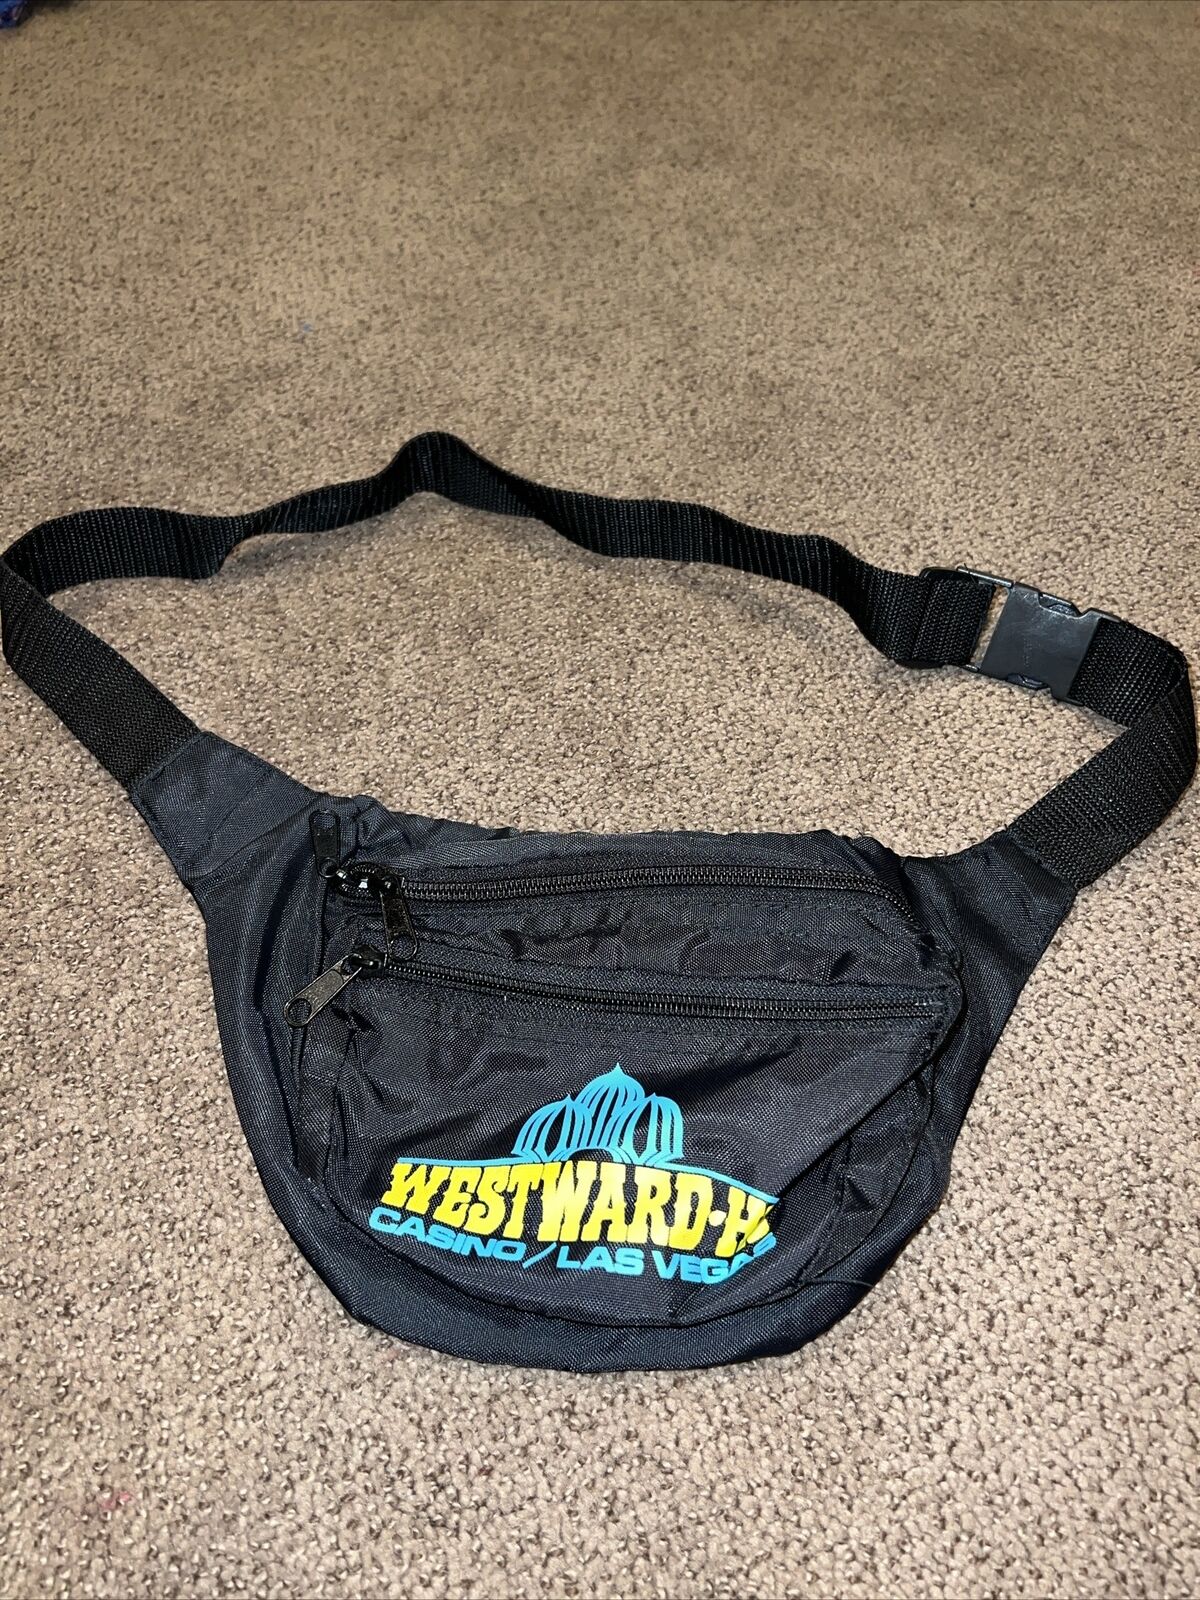 Vintage Westward-Ho Casino Belt Bag Fanny Pack